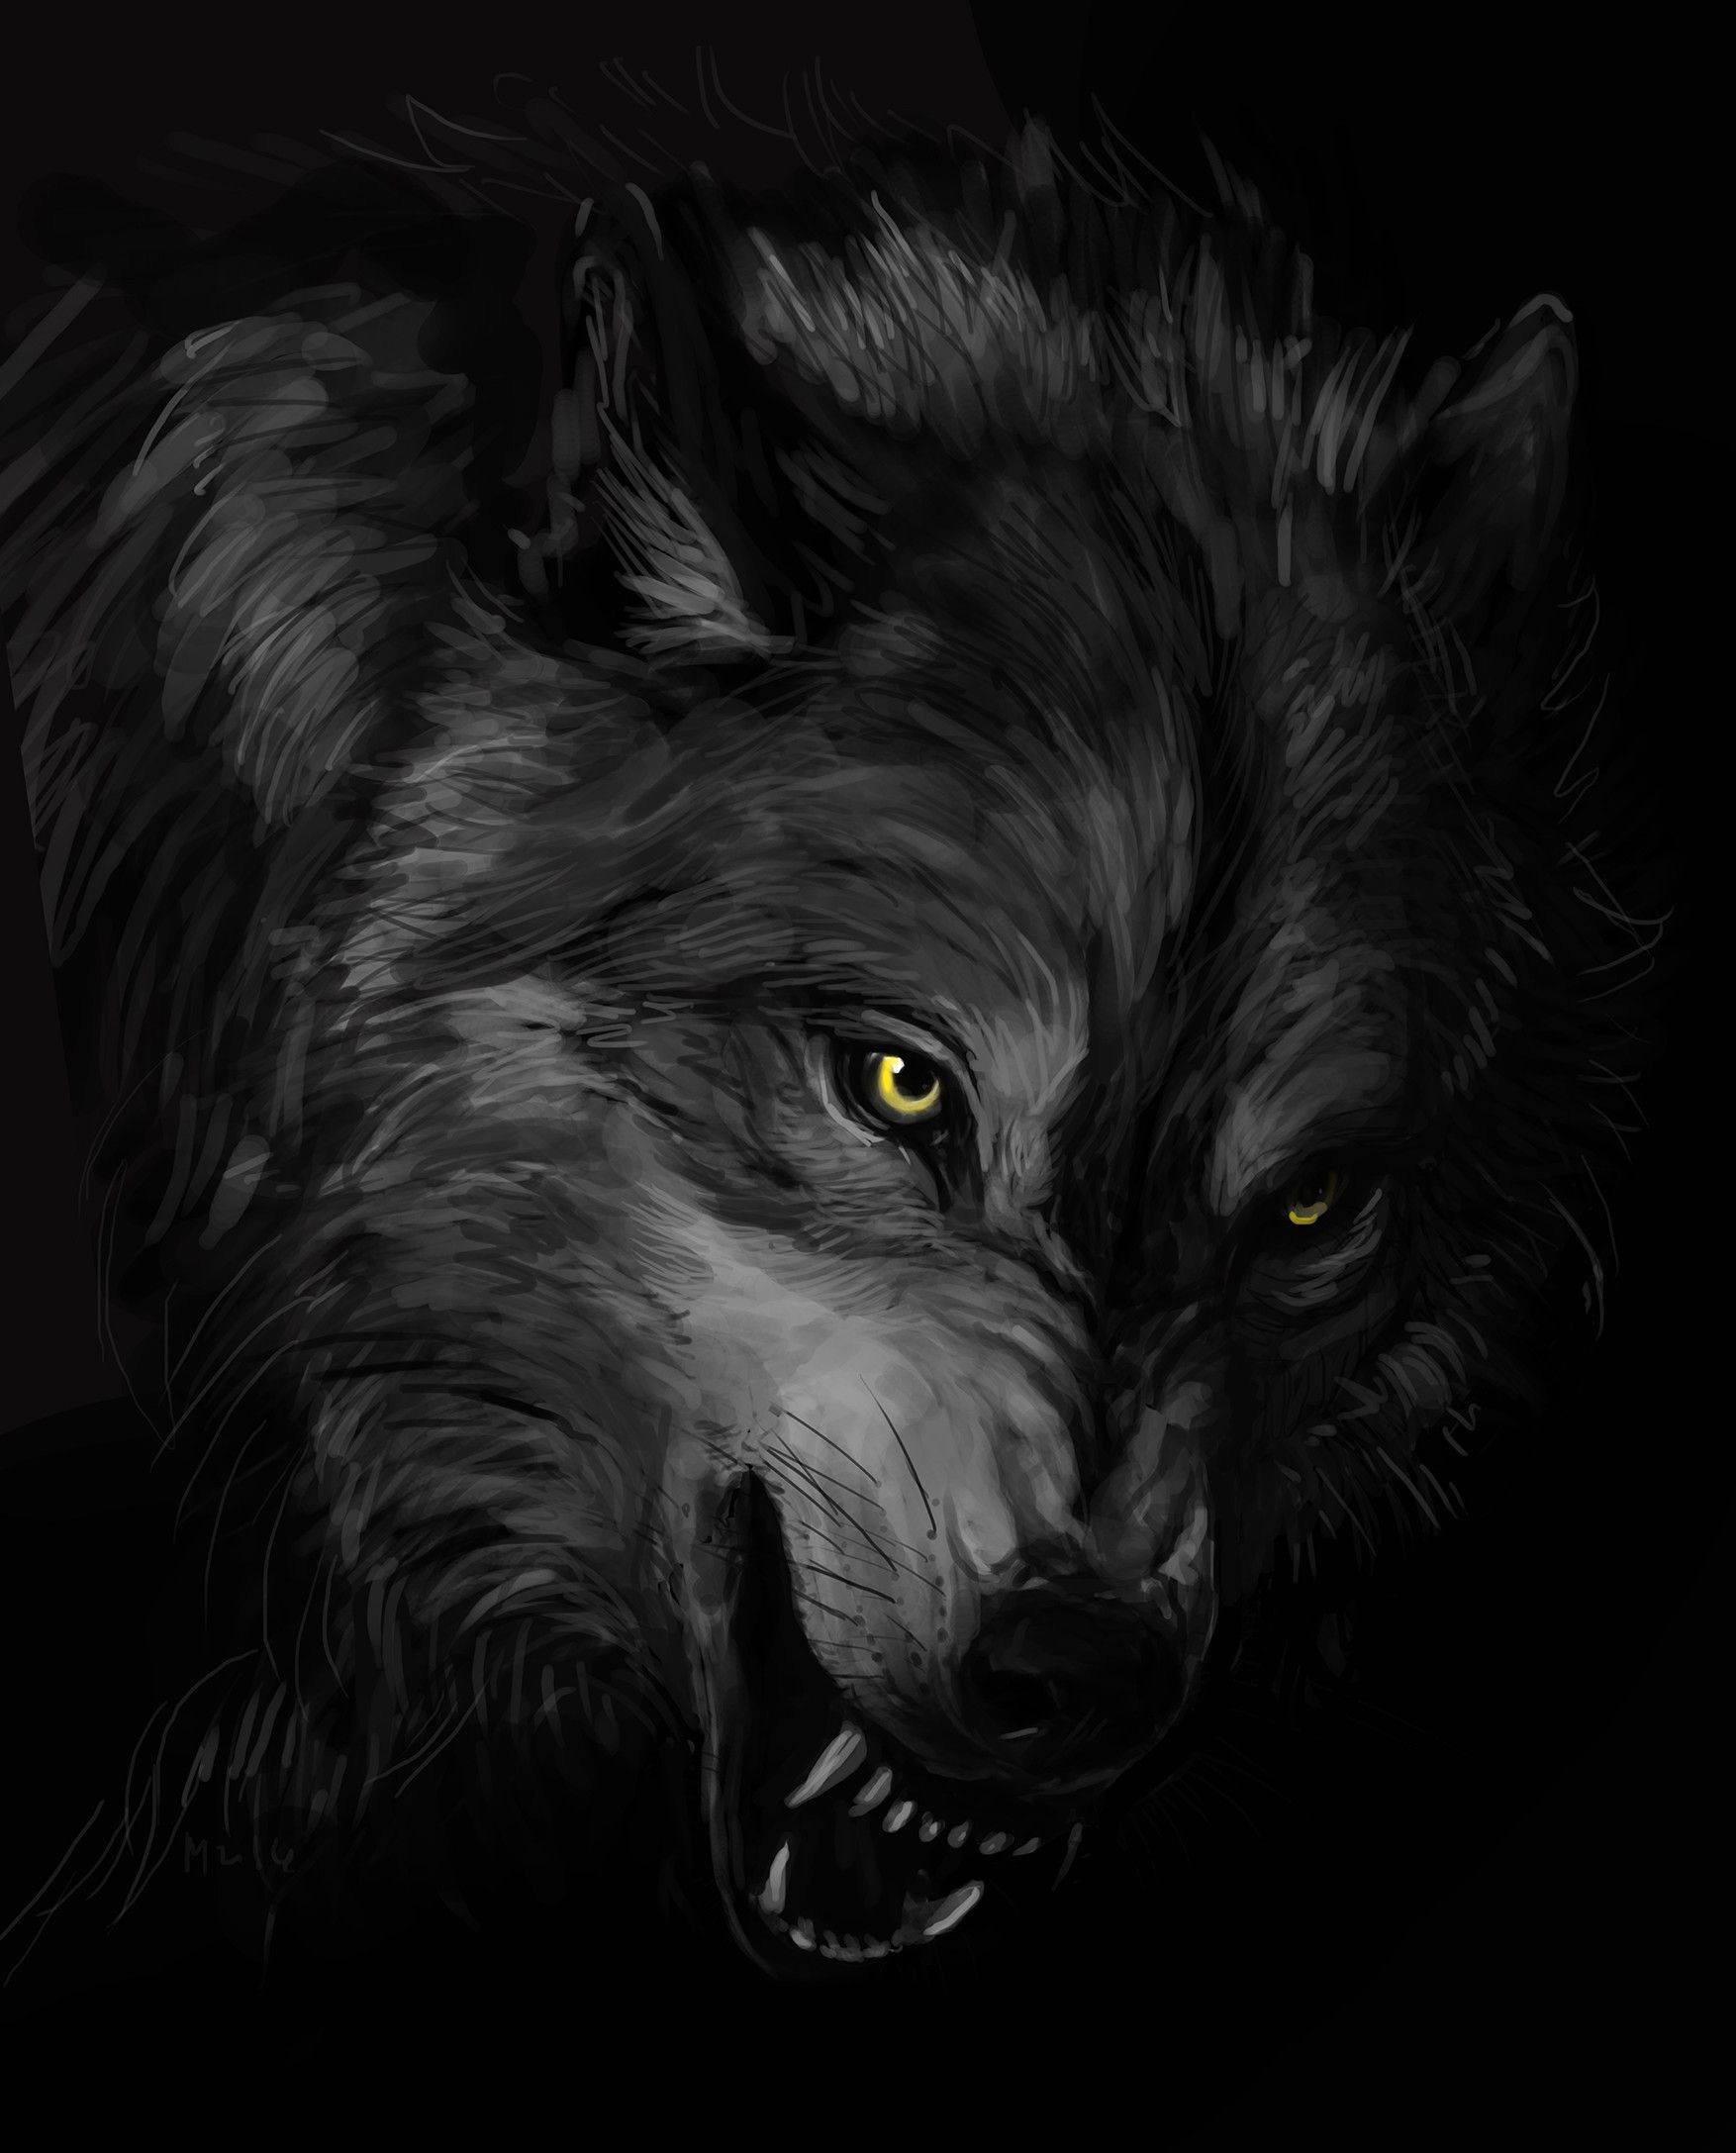 Unique Dark Wolves Wallpapers This Month | Tapet de pomelo